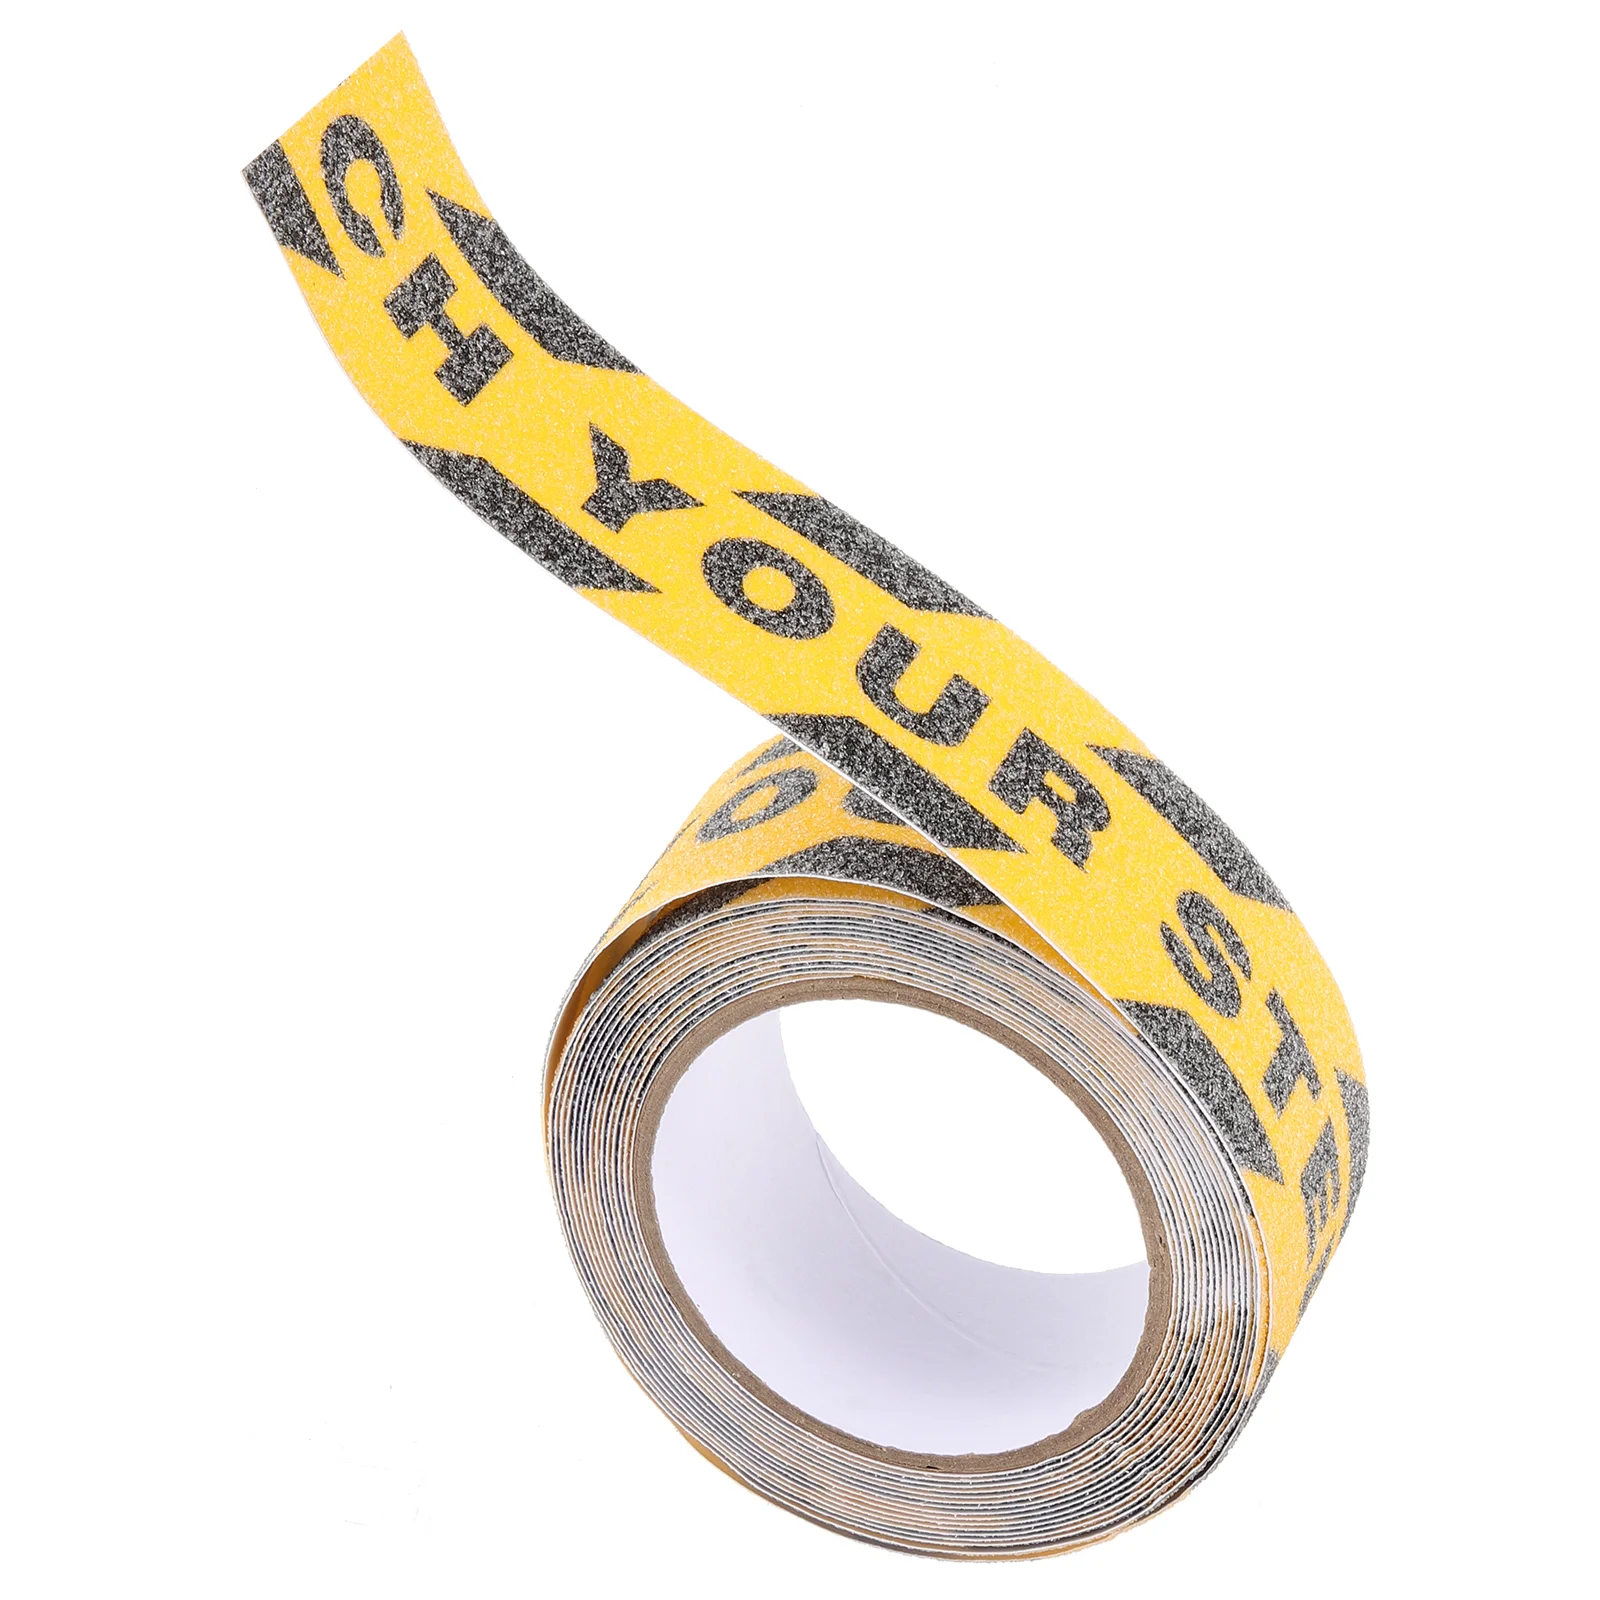 Ver su pegatina de paso cinta de seguridad pegatina de uñas calcomanías de suelo construcción uñas adhesivo de precaución